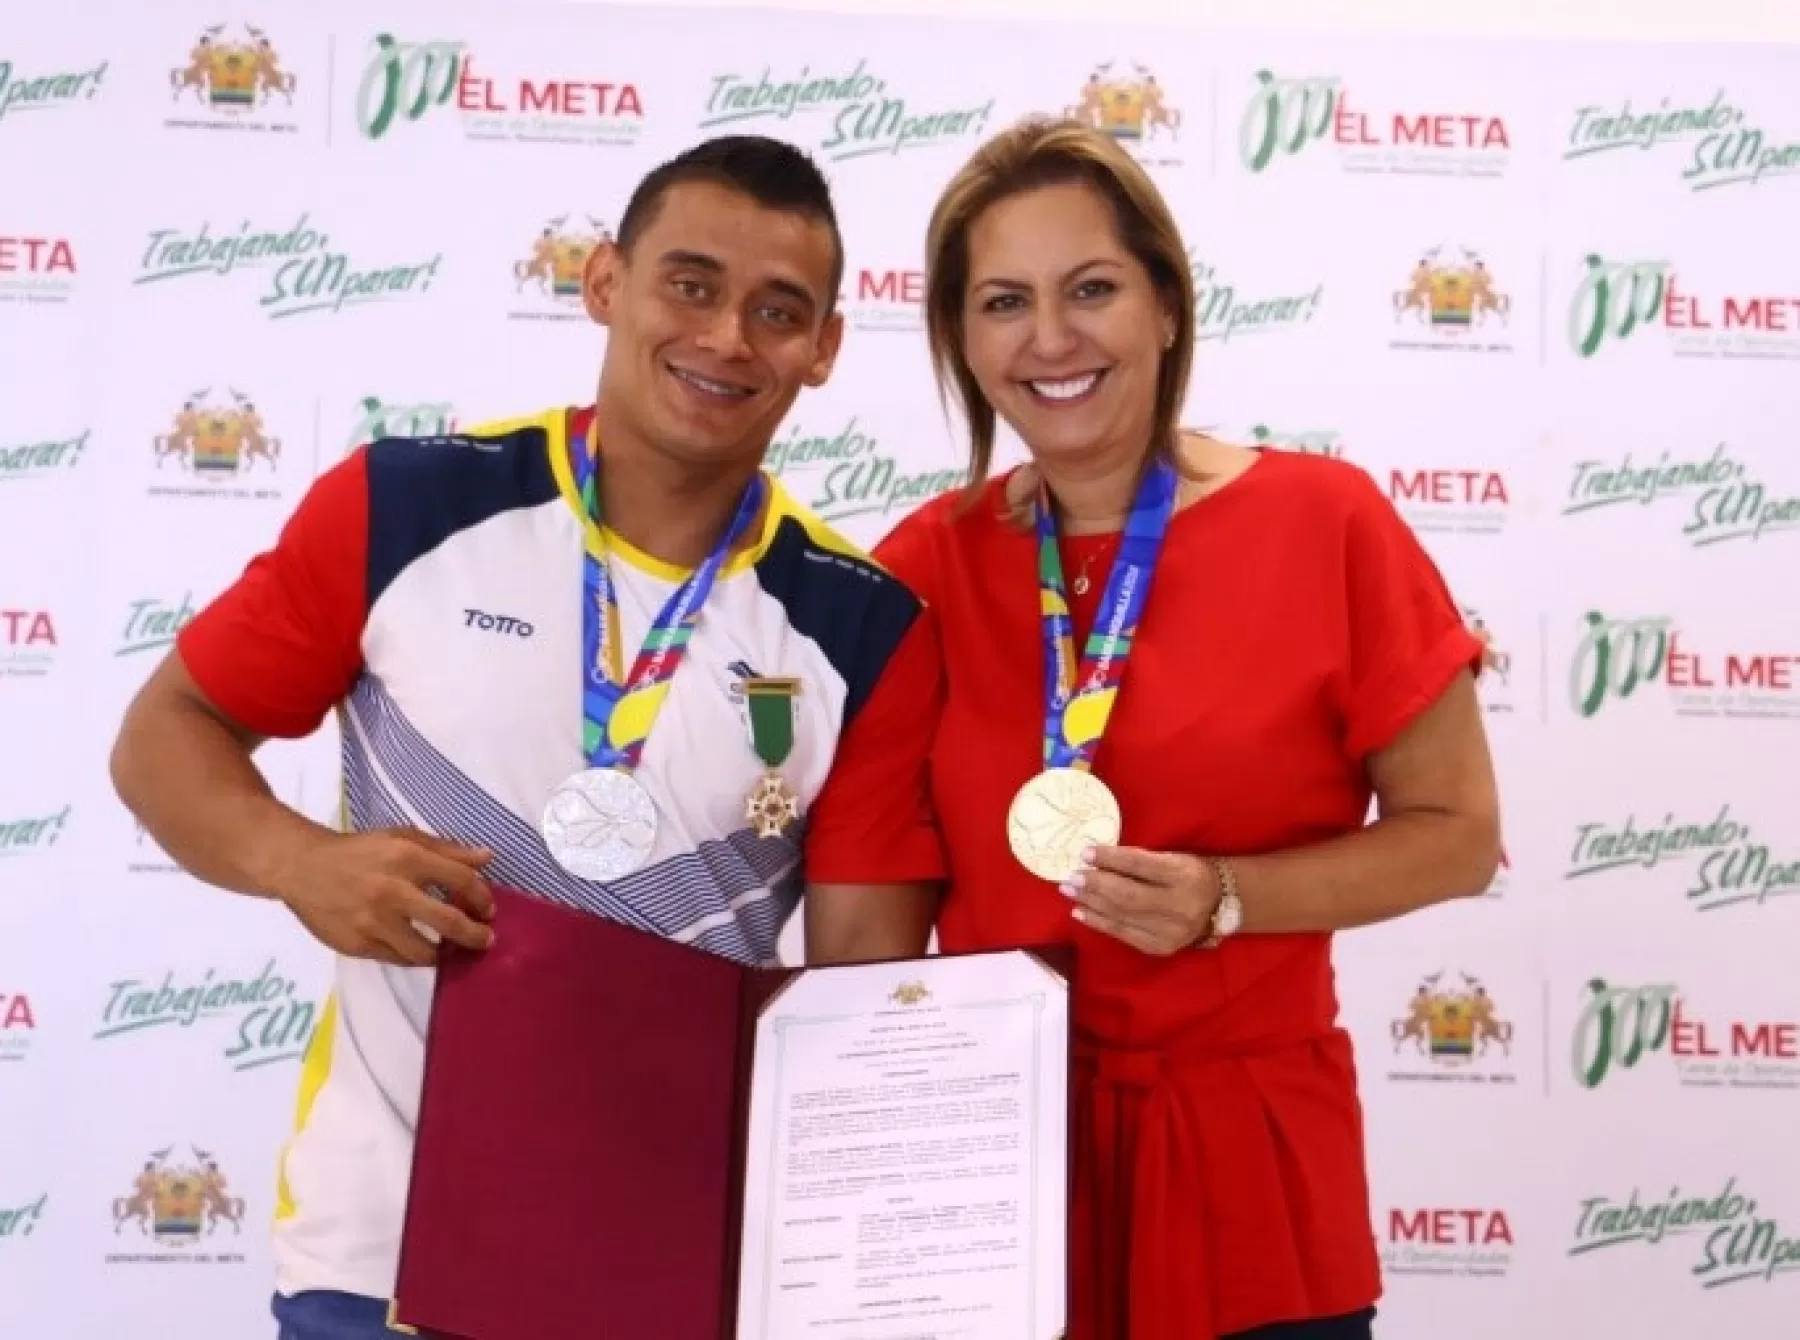 Recibimiento de deportista y ganador de medallas de oro y plata en la disciplina de levantamiento de pesas, Hugo Montes, en los Juegos Centroamericanos y del Caribe Barranquilla 2018.